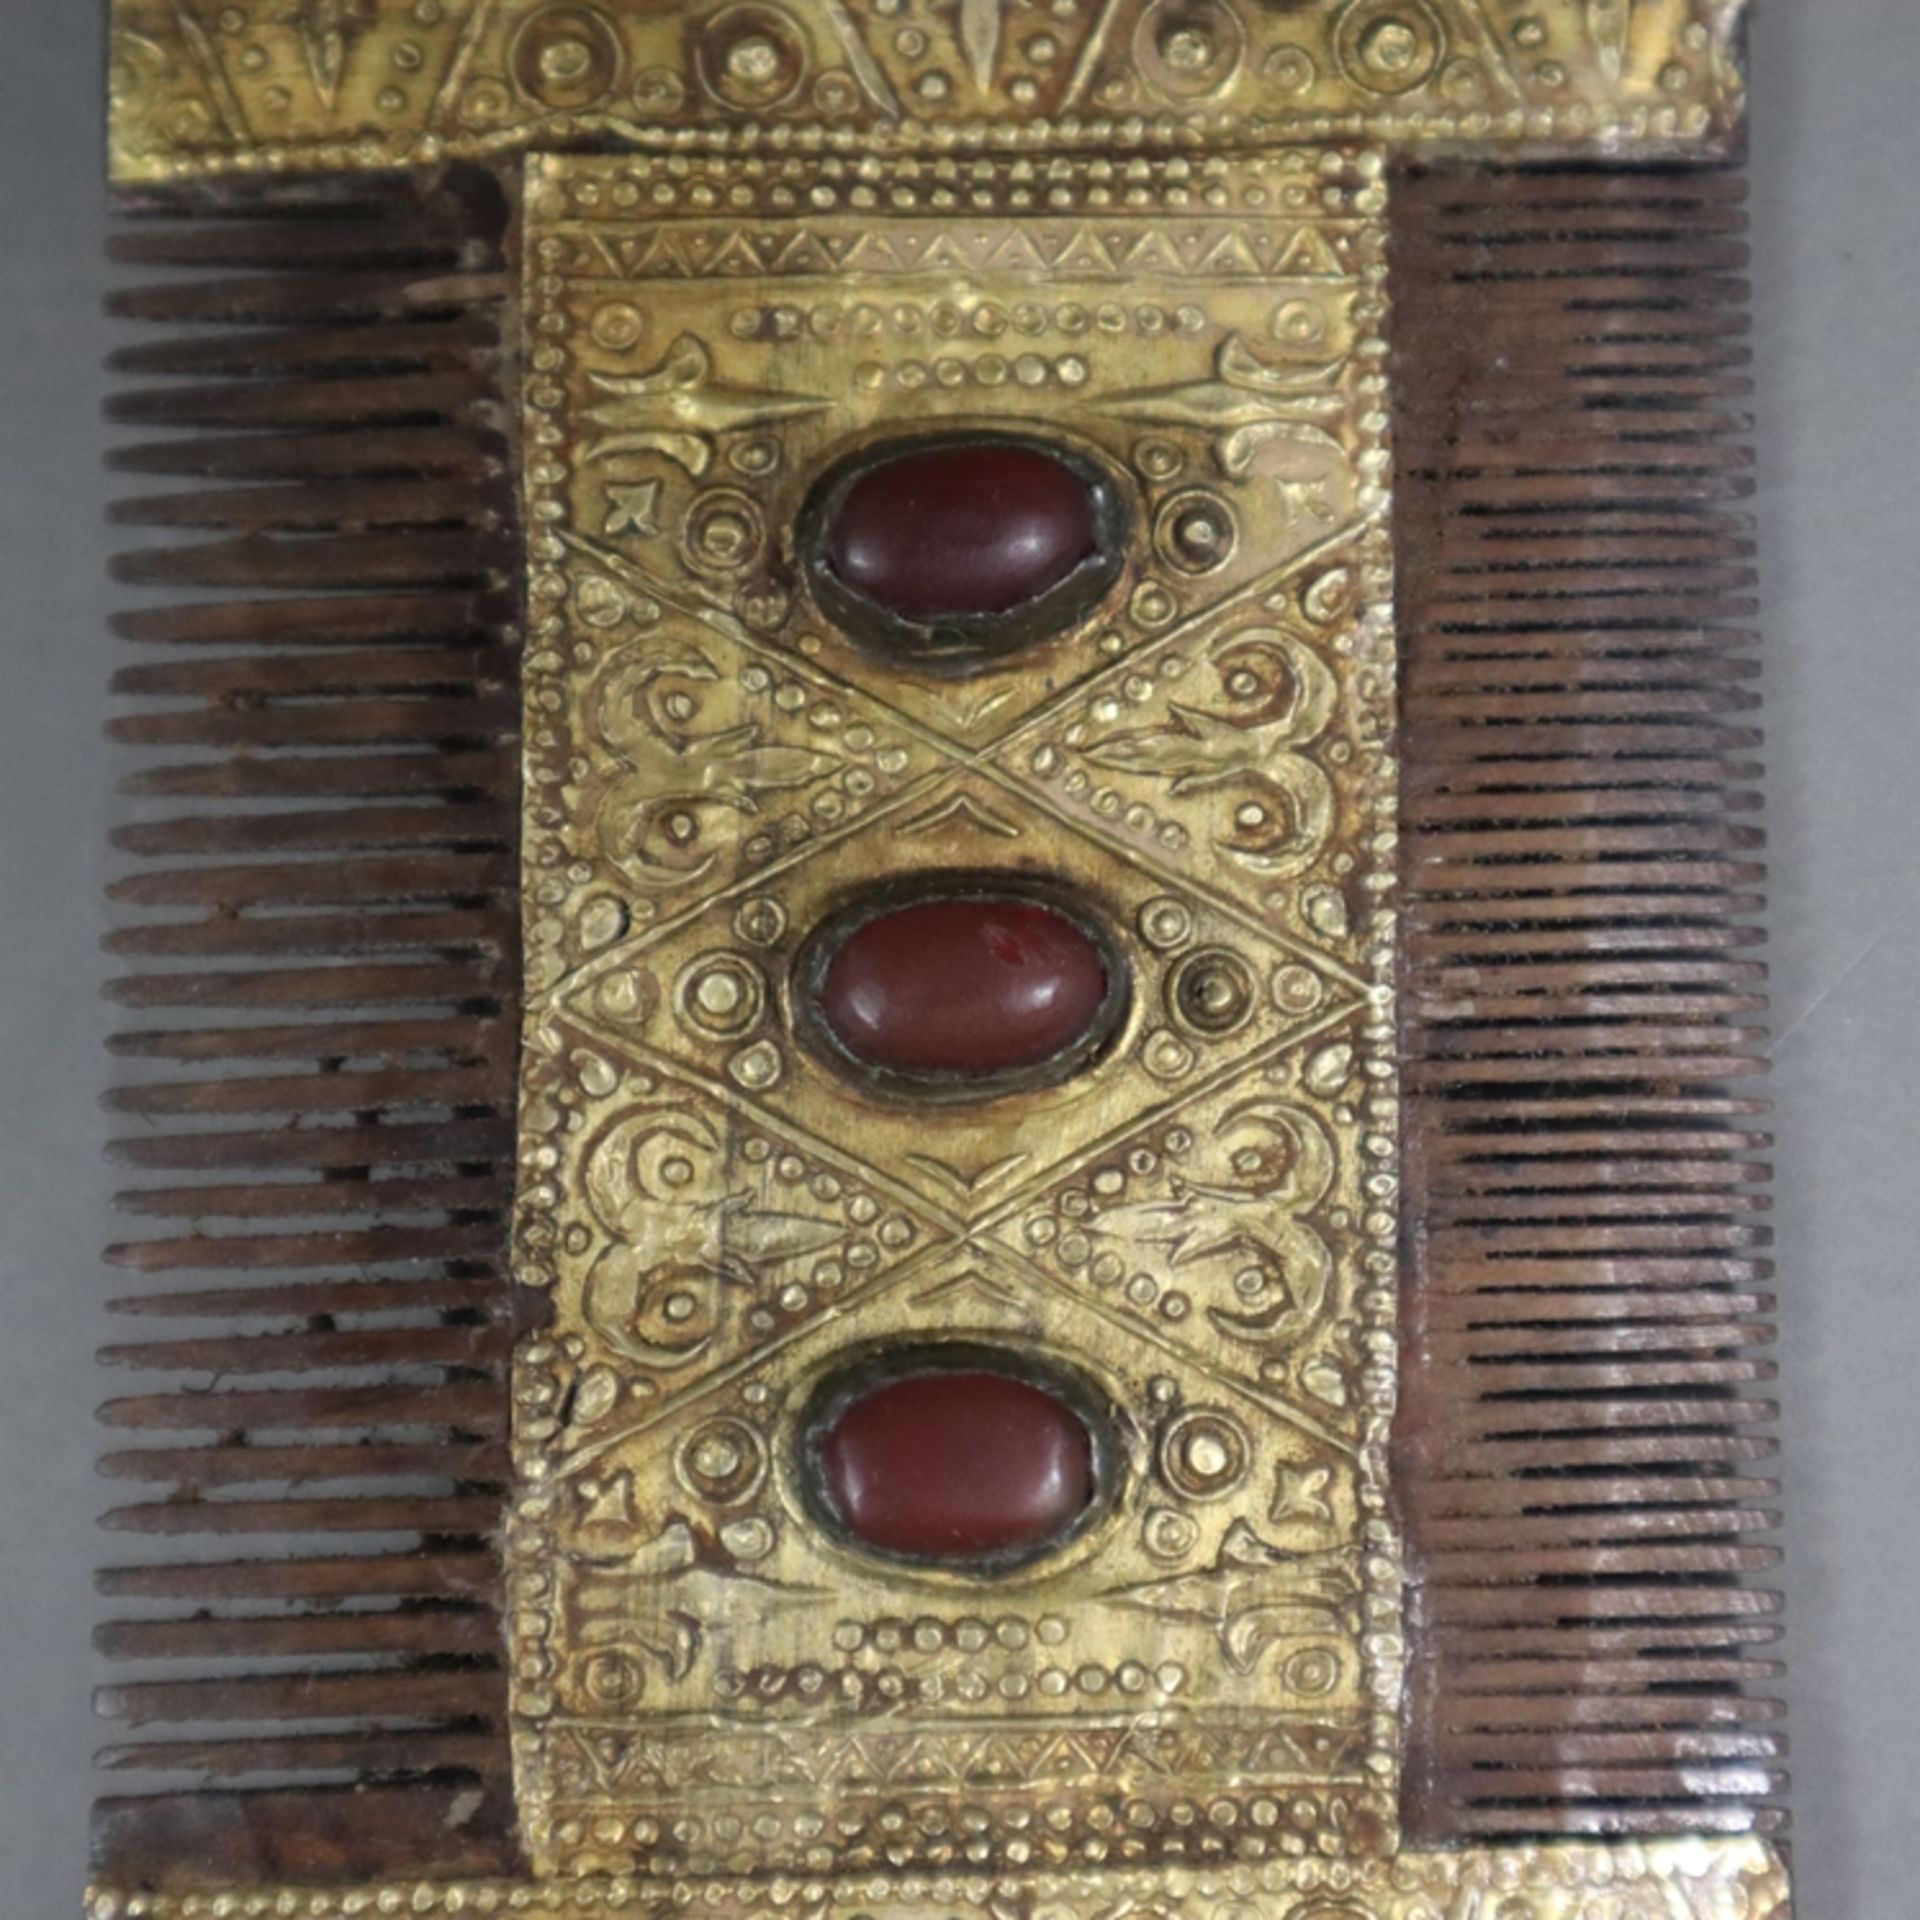 Silbermontierter Kamm - Turkmenistan, 19. / 20. Jh., silberner Kamm vergoldet, mit Reliefdekor sowi - Bild 2 aus 5